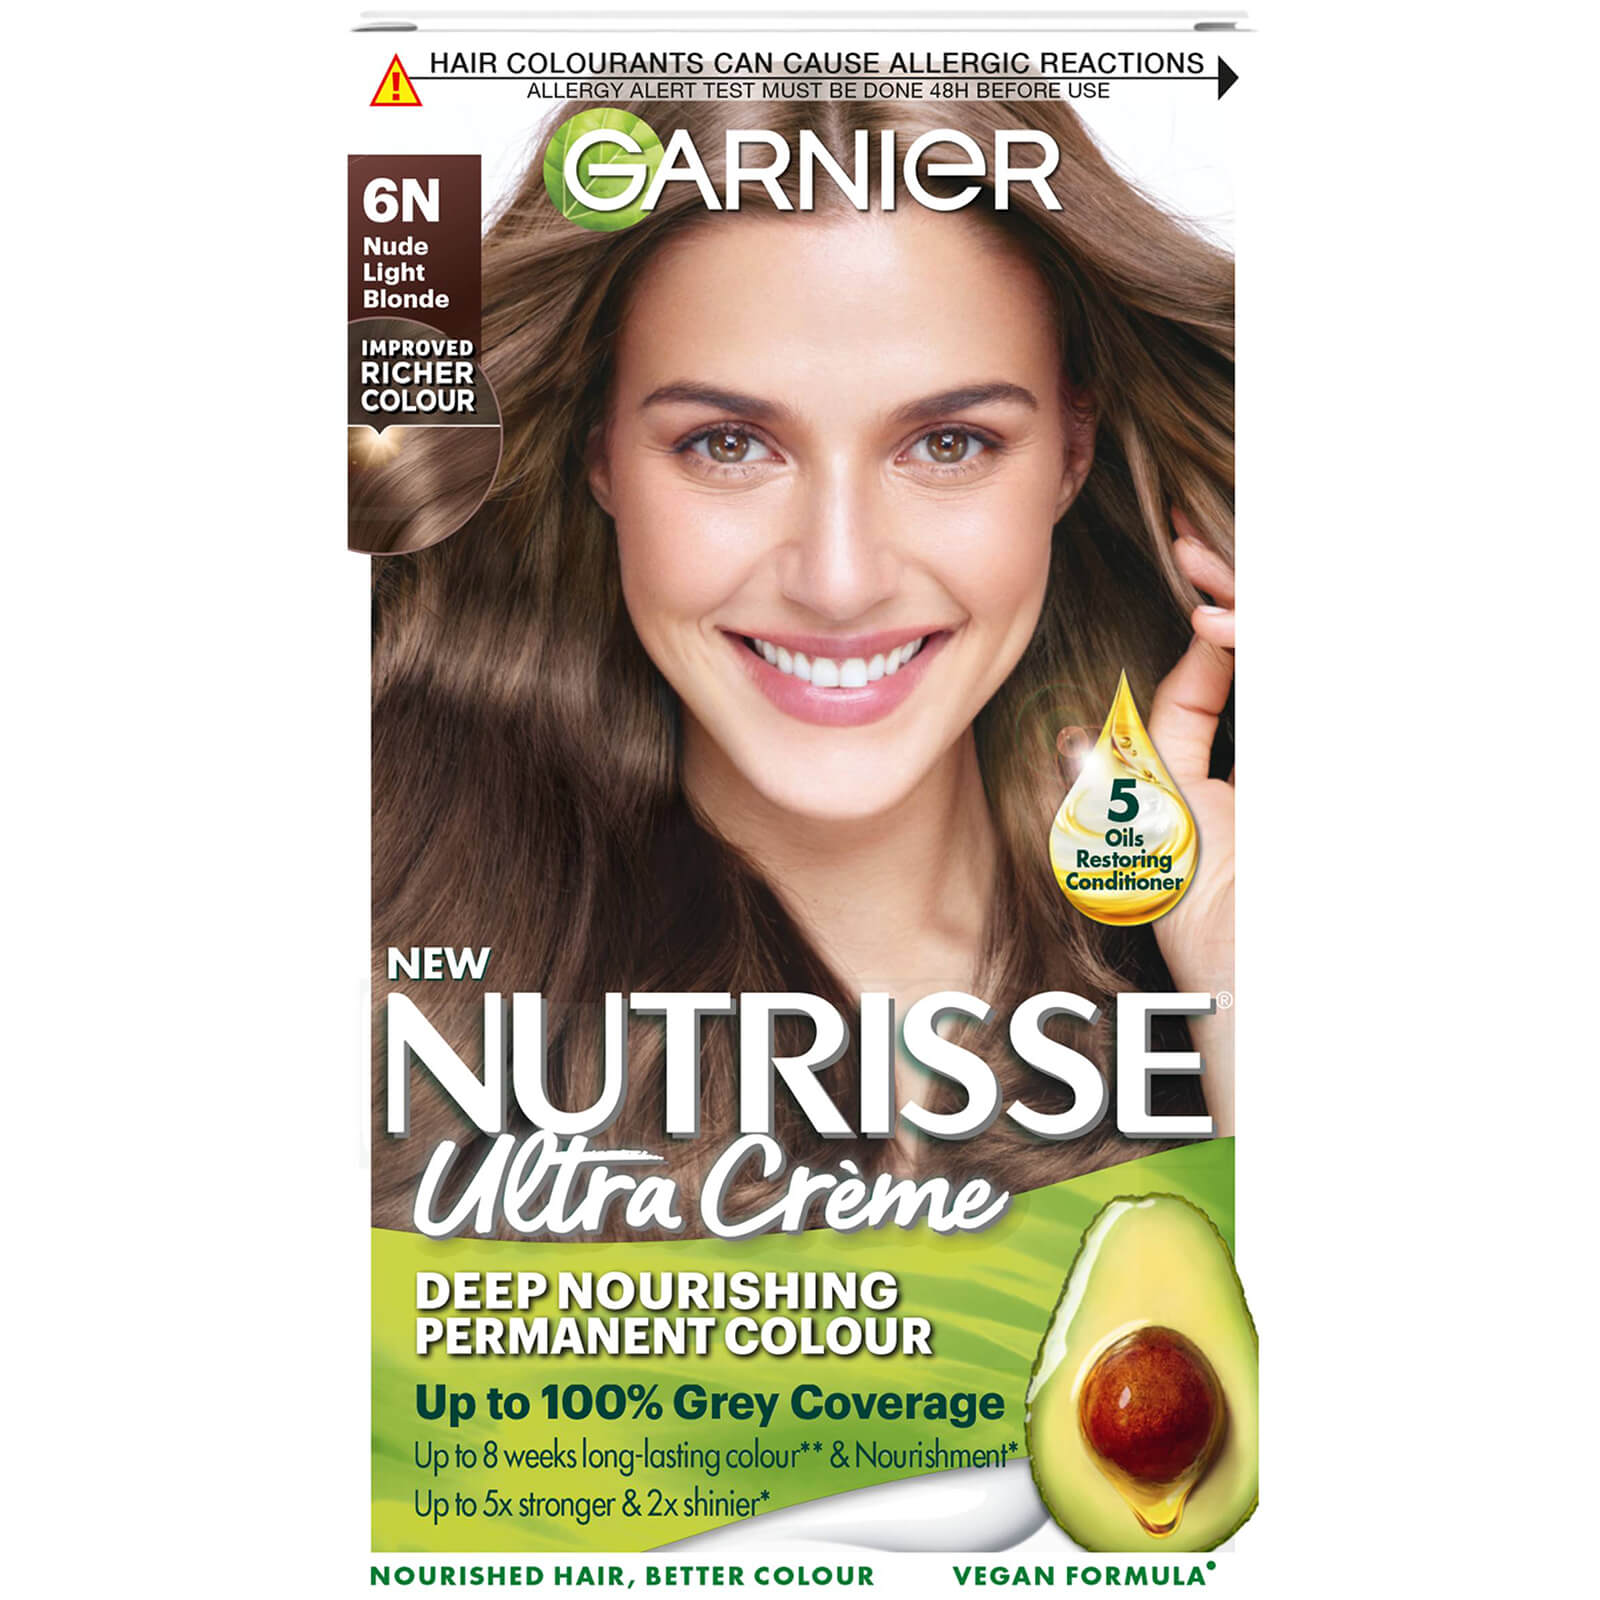 Garnier Nutrisse Permanent Hair Dye (Various Shades) - 6N Nude Light Brown